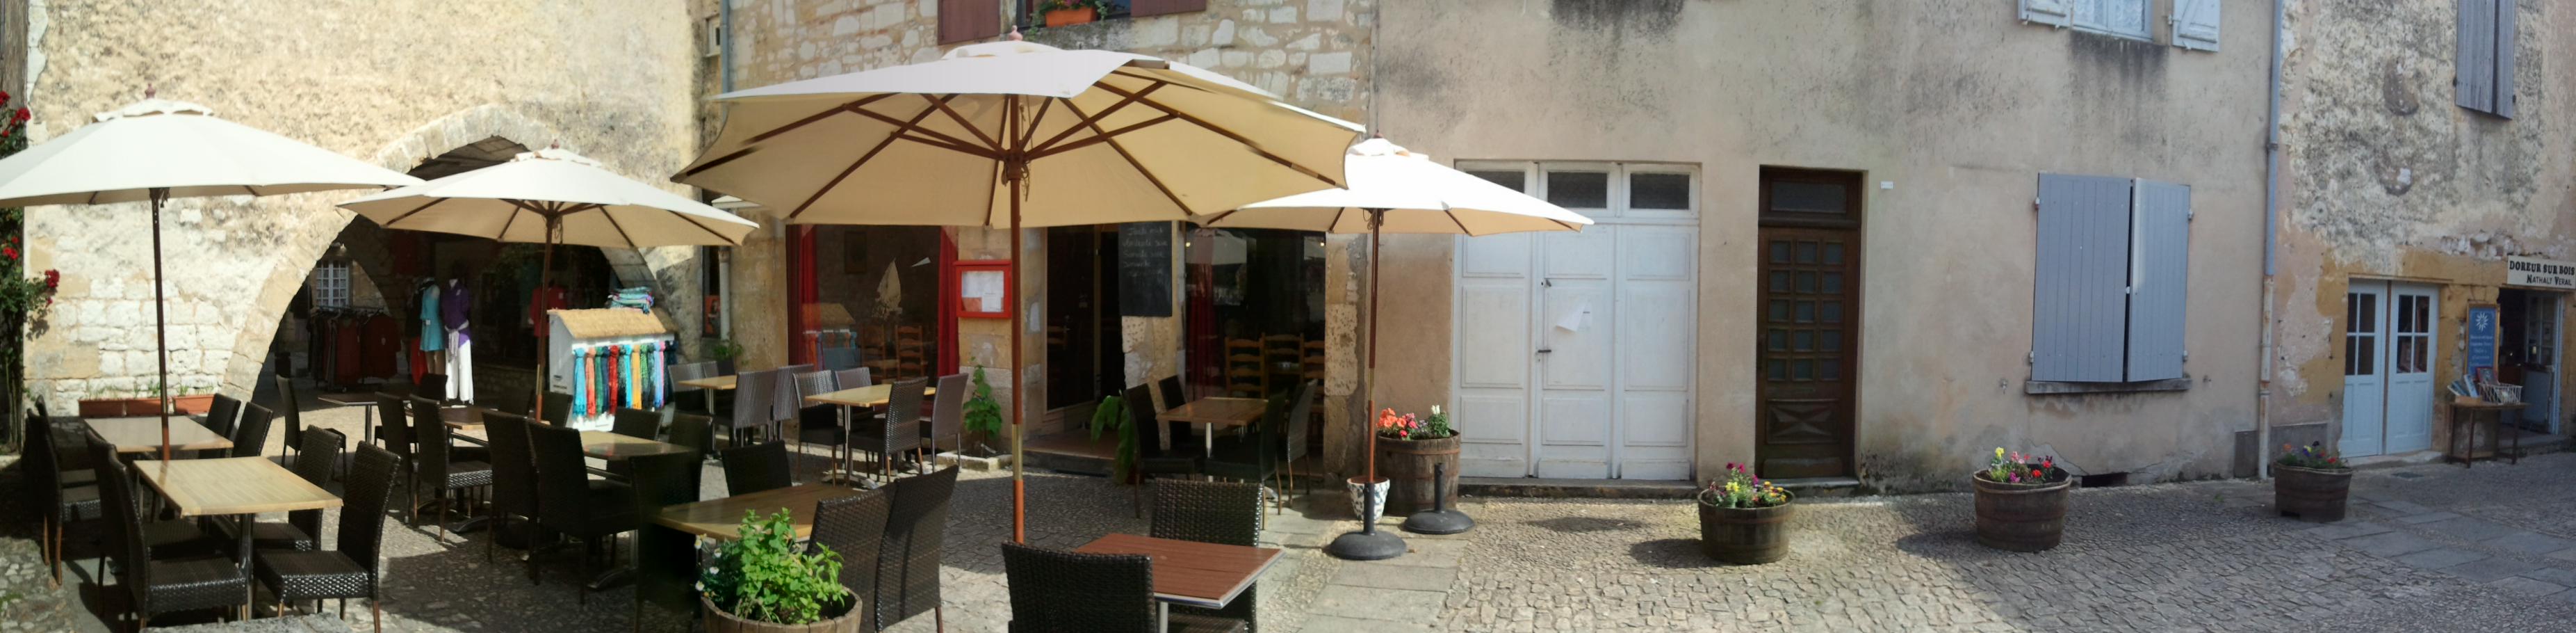 Restaurant sur la place centrale de Monpazier  bastide médiévale  du périgord .Haut lieu touristique. Beaucoup de travail en perspective, seul restaurant sur la place.....